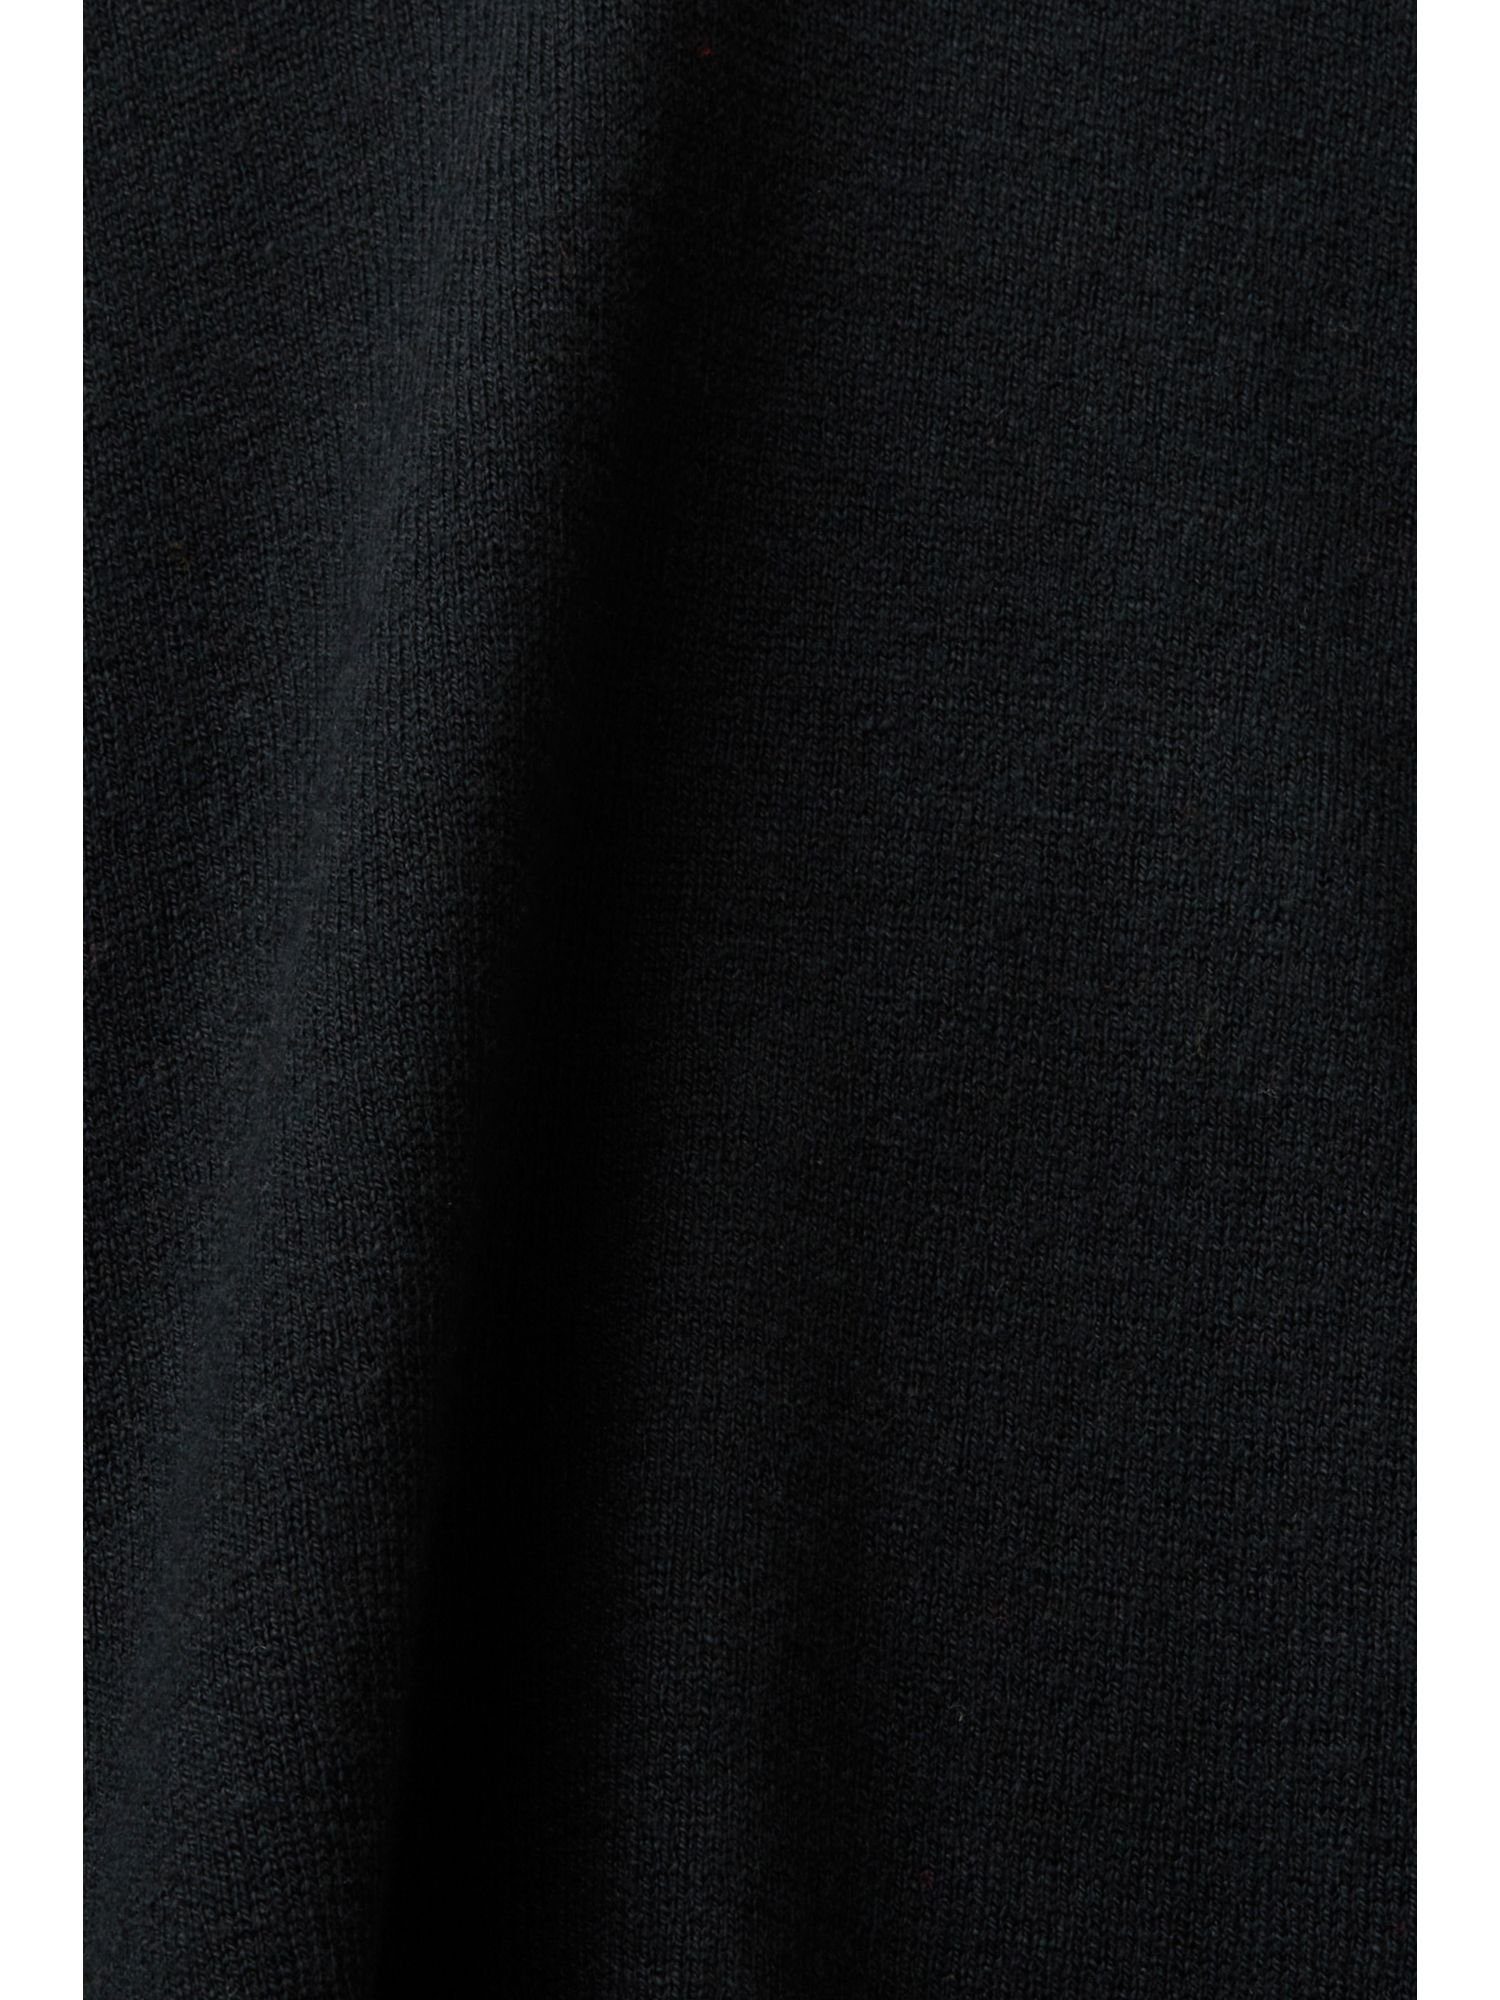 mit Esprit Pullover V-Ausschnitt Rundhalspullover BLACK